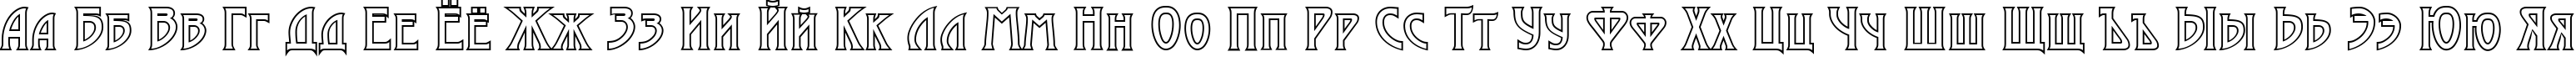 Пример написания русского алфавита шрифтом a_ModernoCapsOtl